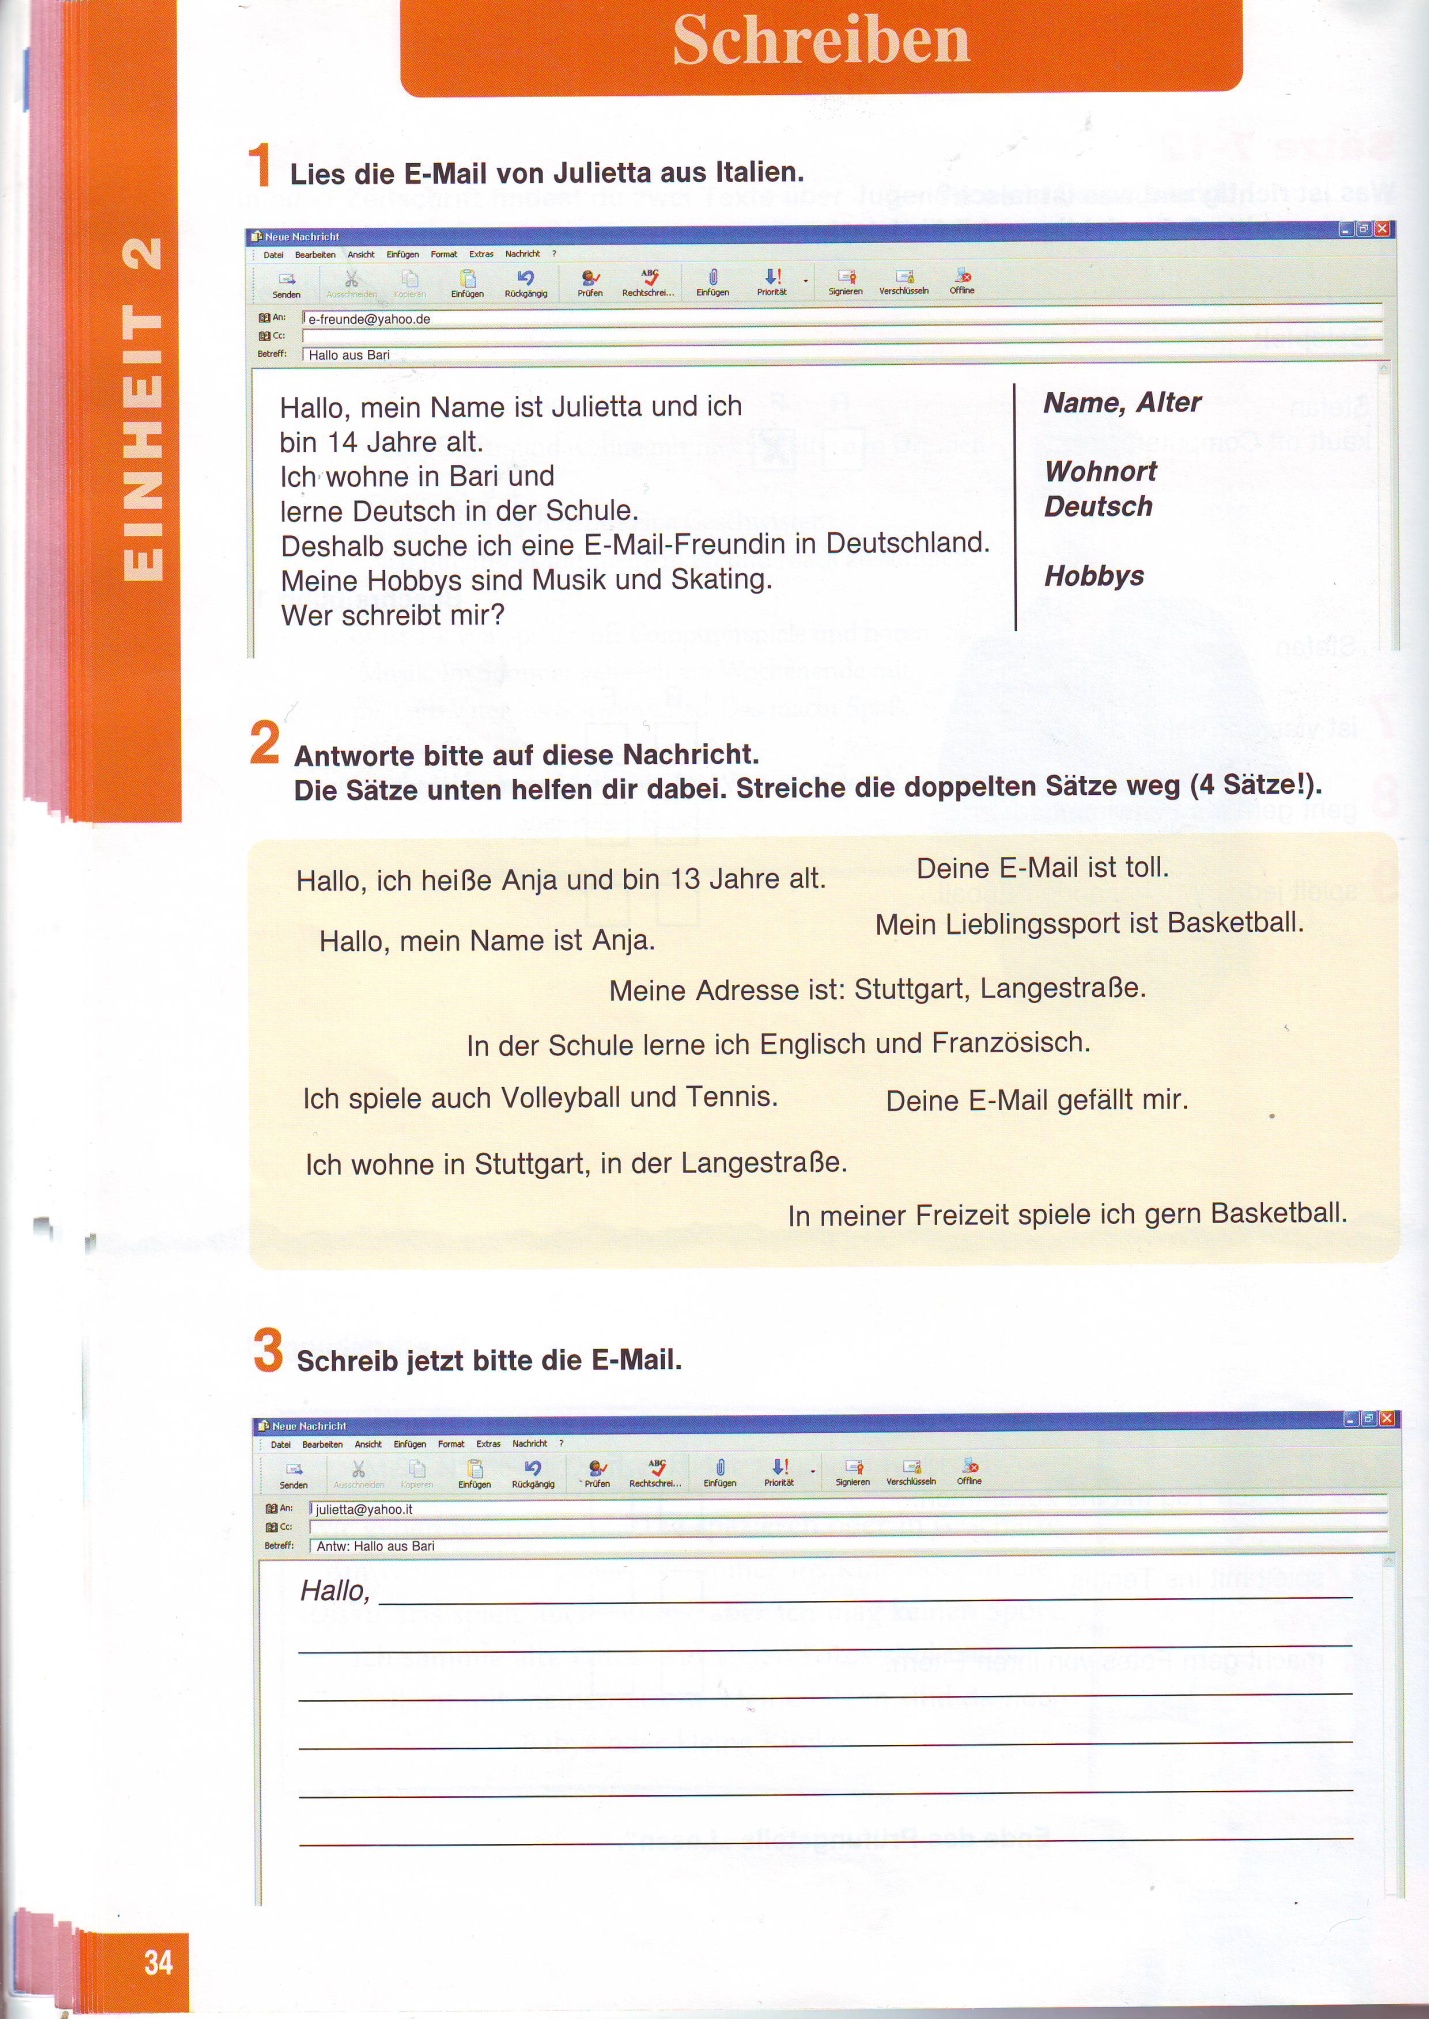 Рабочая программа по немецкому языку предметной линии учебников И.Л.Бим Шаги 3, 7 класс